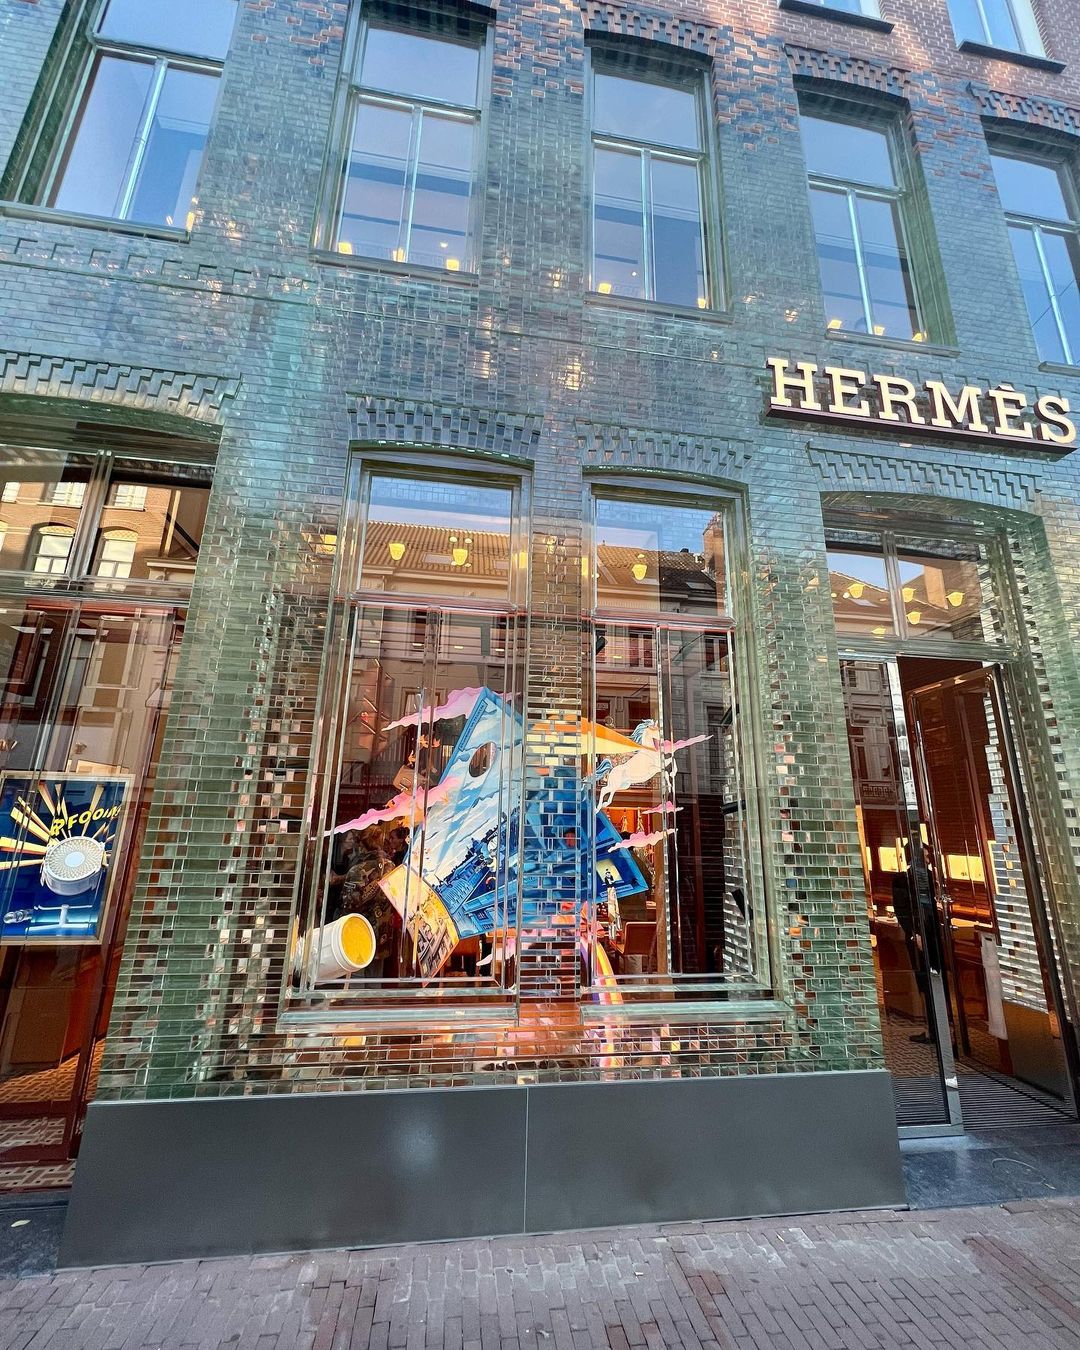 Façade of Hermès store in Amsterdam